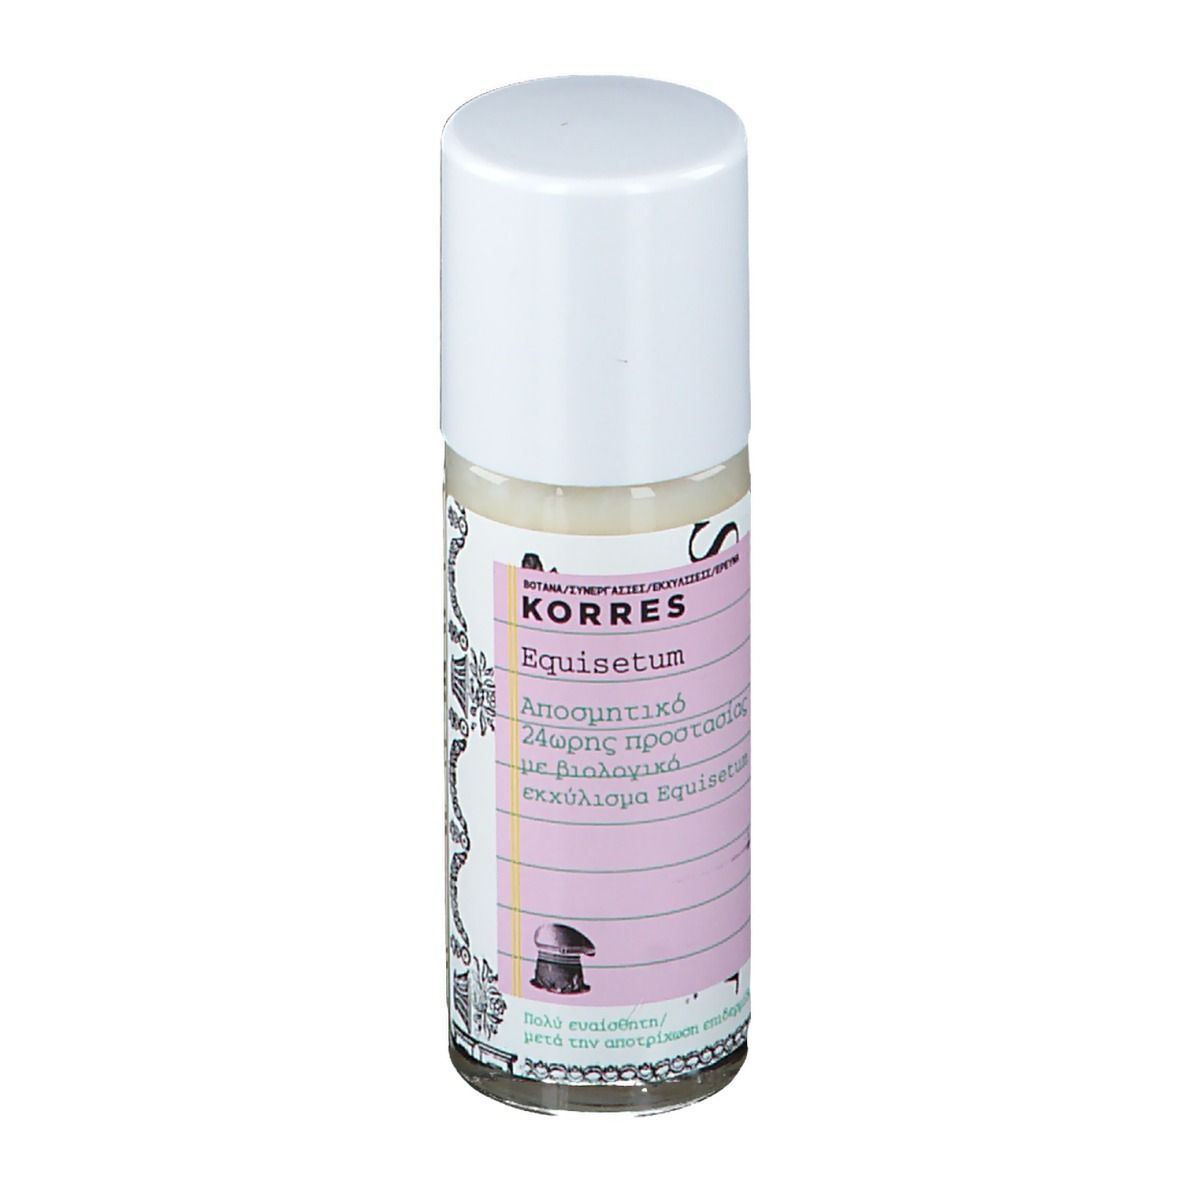 KORRES® Equisetum Deodorant 24h